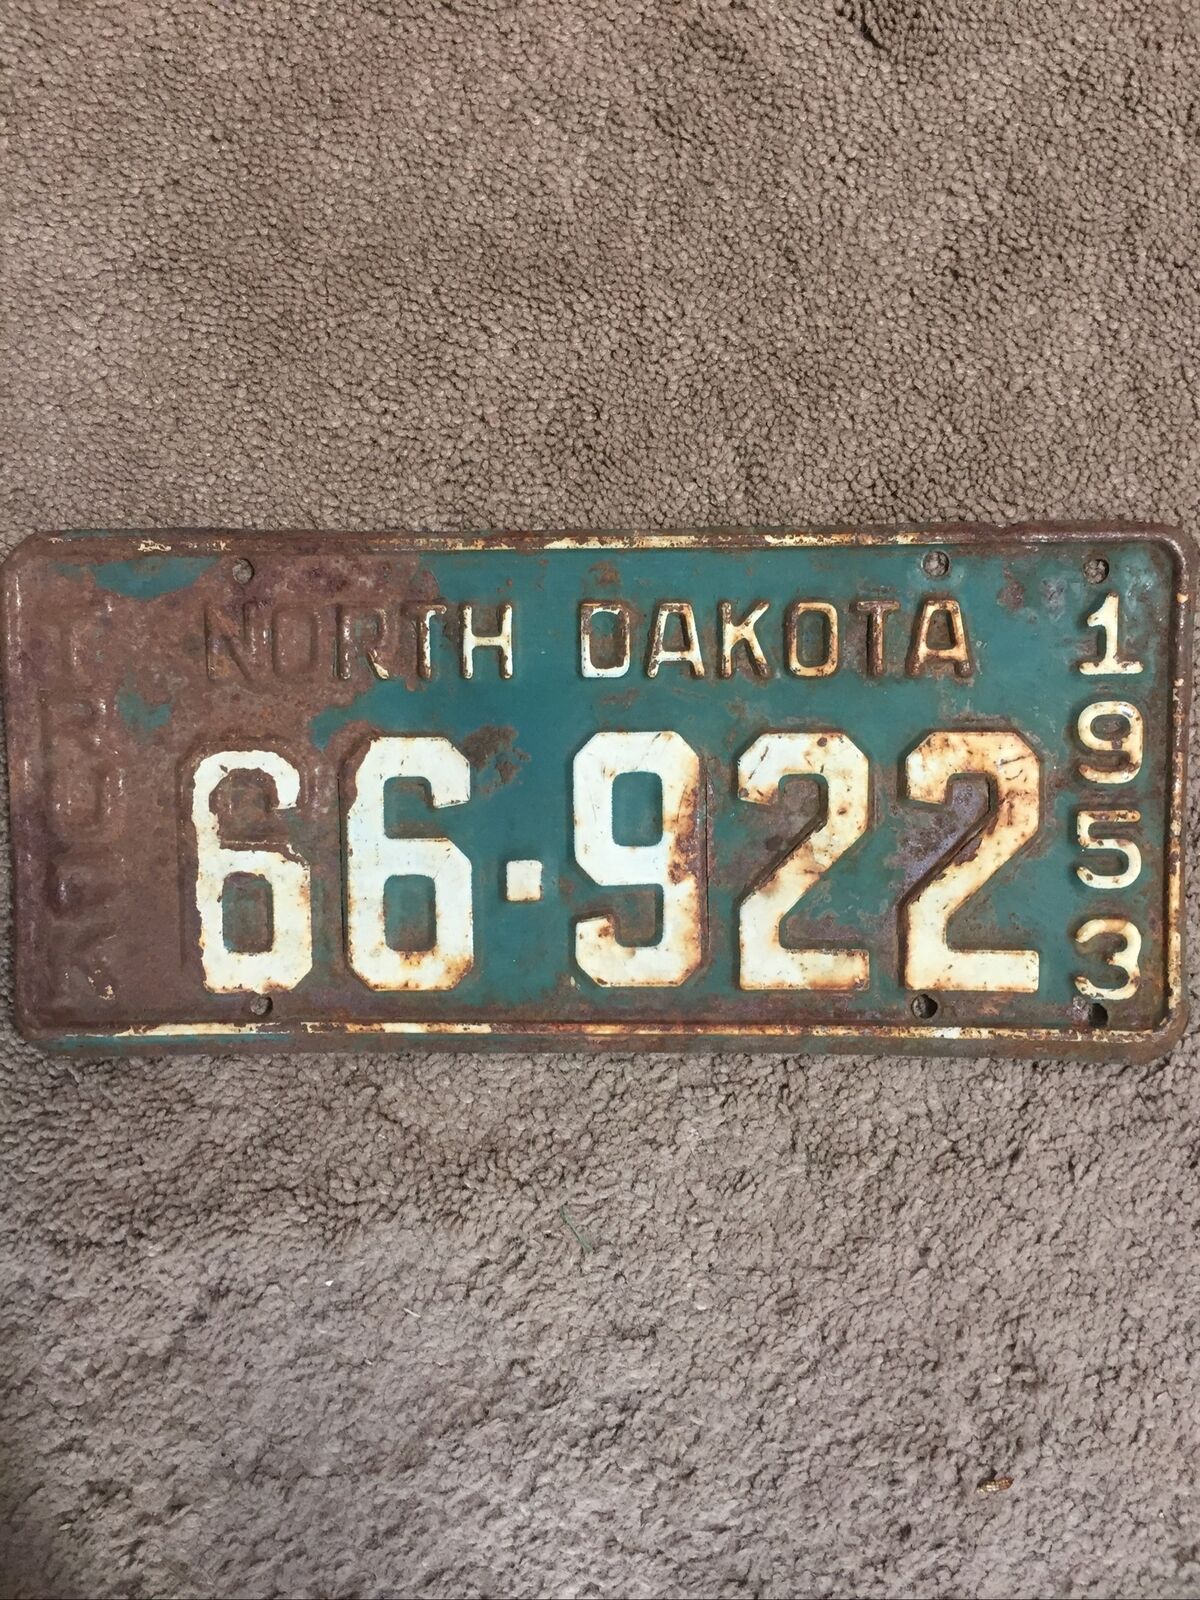 1953 North Dakota Truck License Plate - 66 922 - Rustic